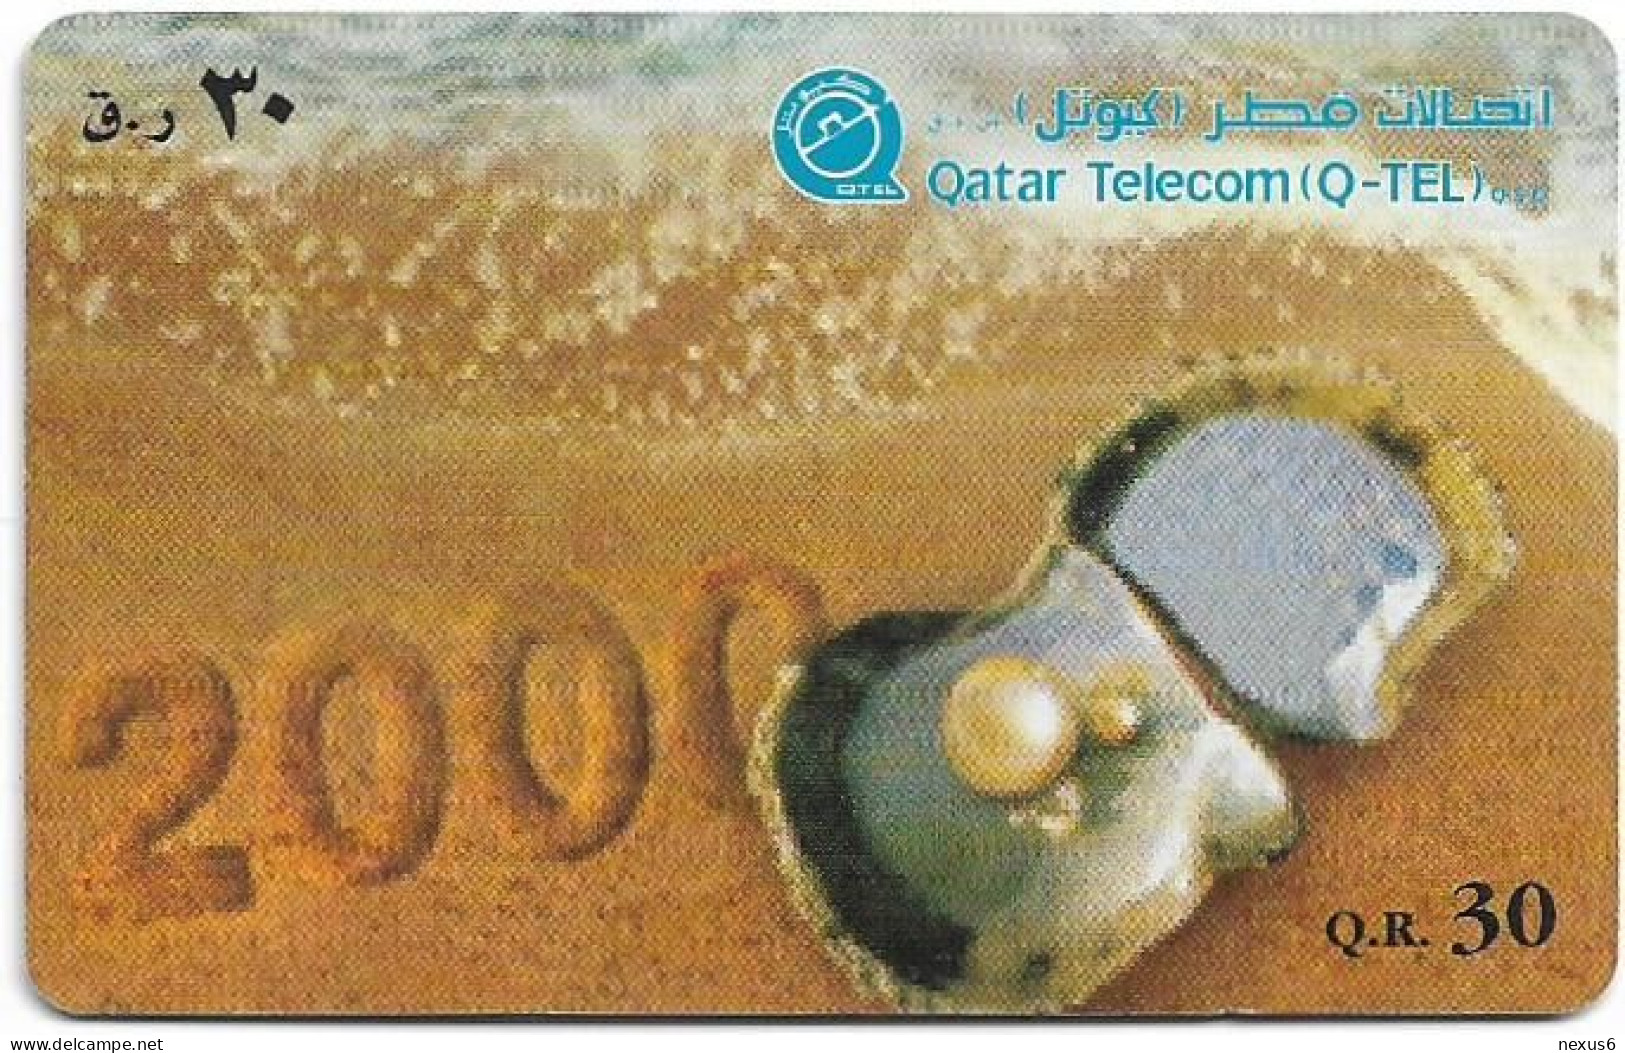 Qatar - Q-Tel - Autelca - Pearl In Shell, 2000, 30QR, Used - Qatar